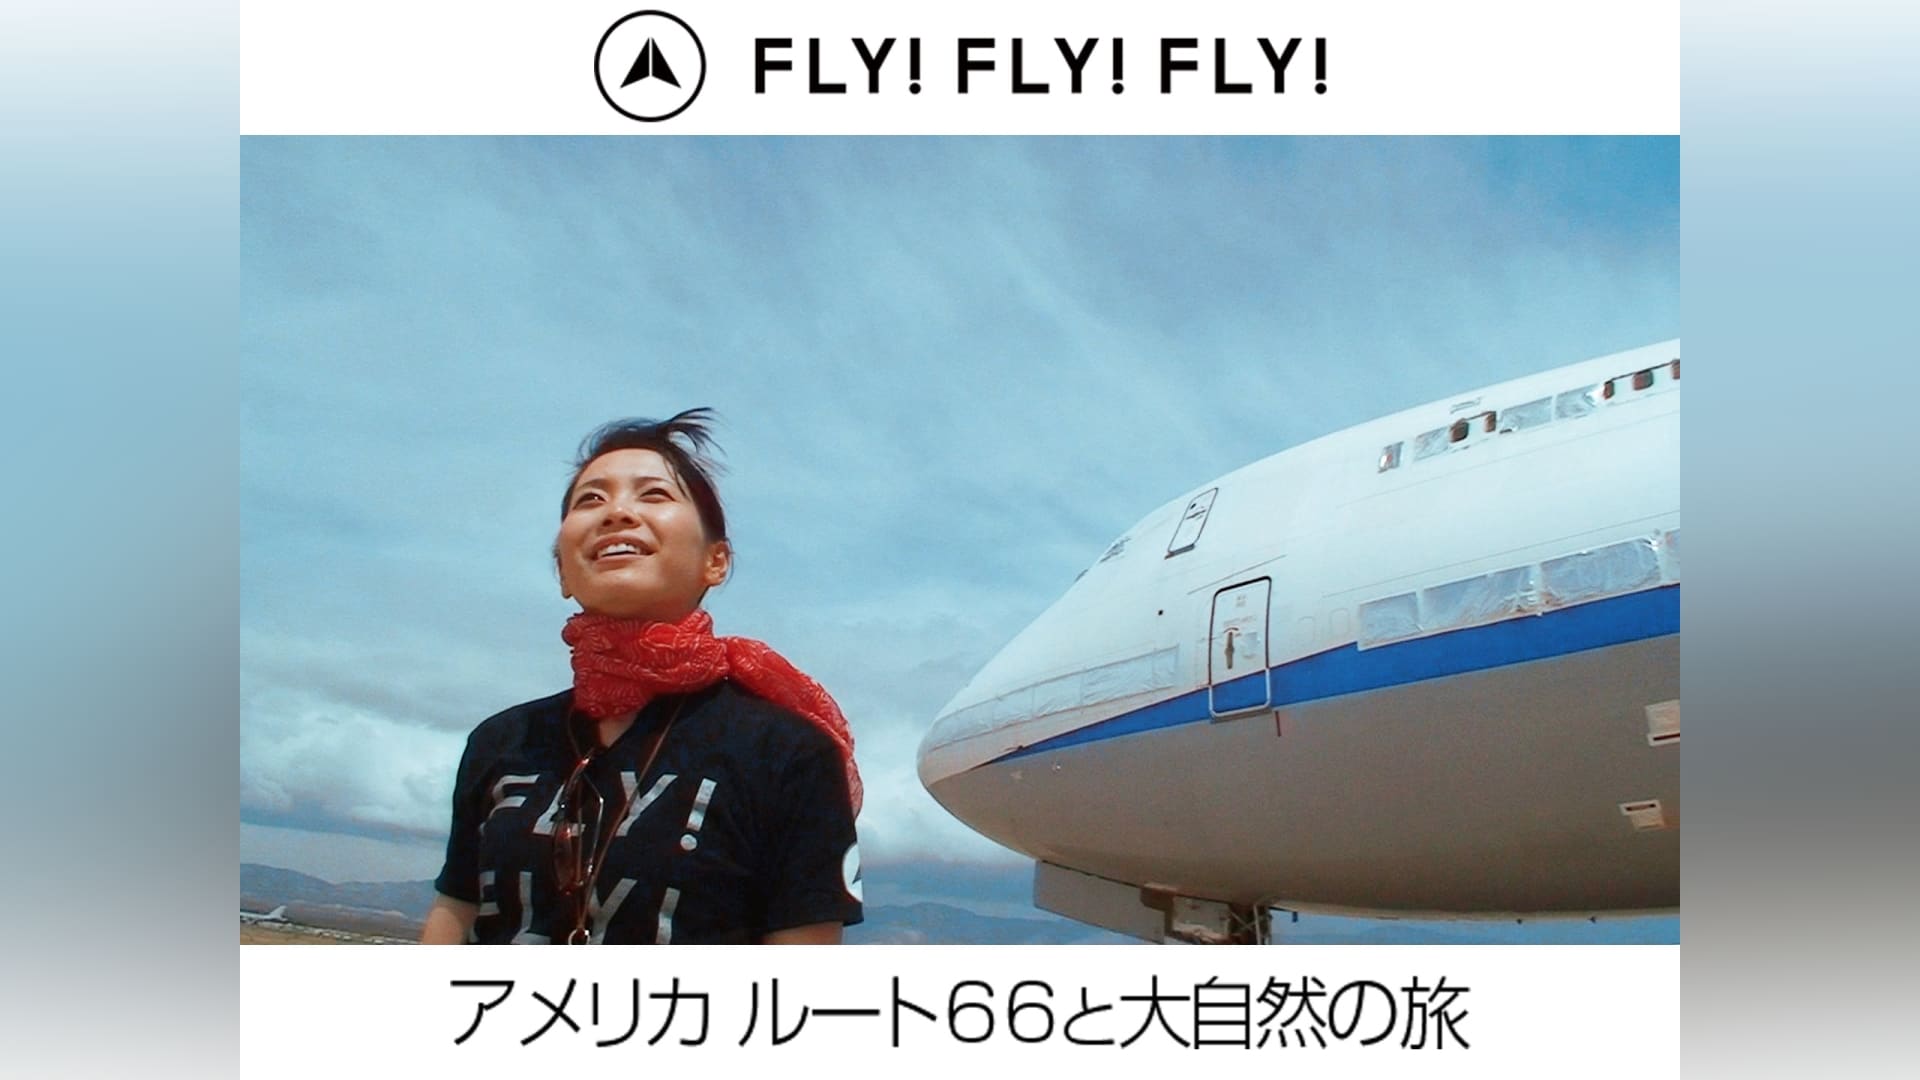 FLY!FLY!FLY!』の動画まとめ |【無料体験】動画配信サービスのビデオマーケット